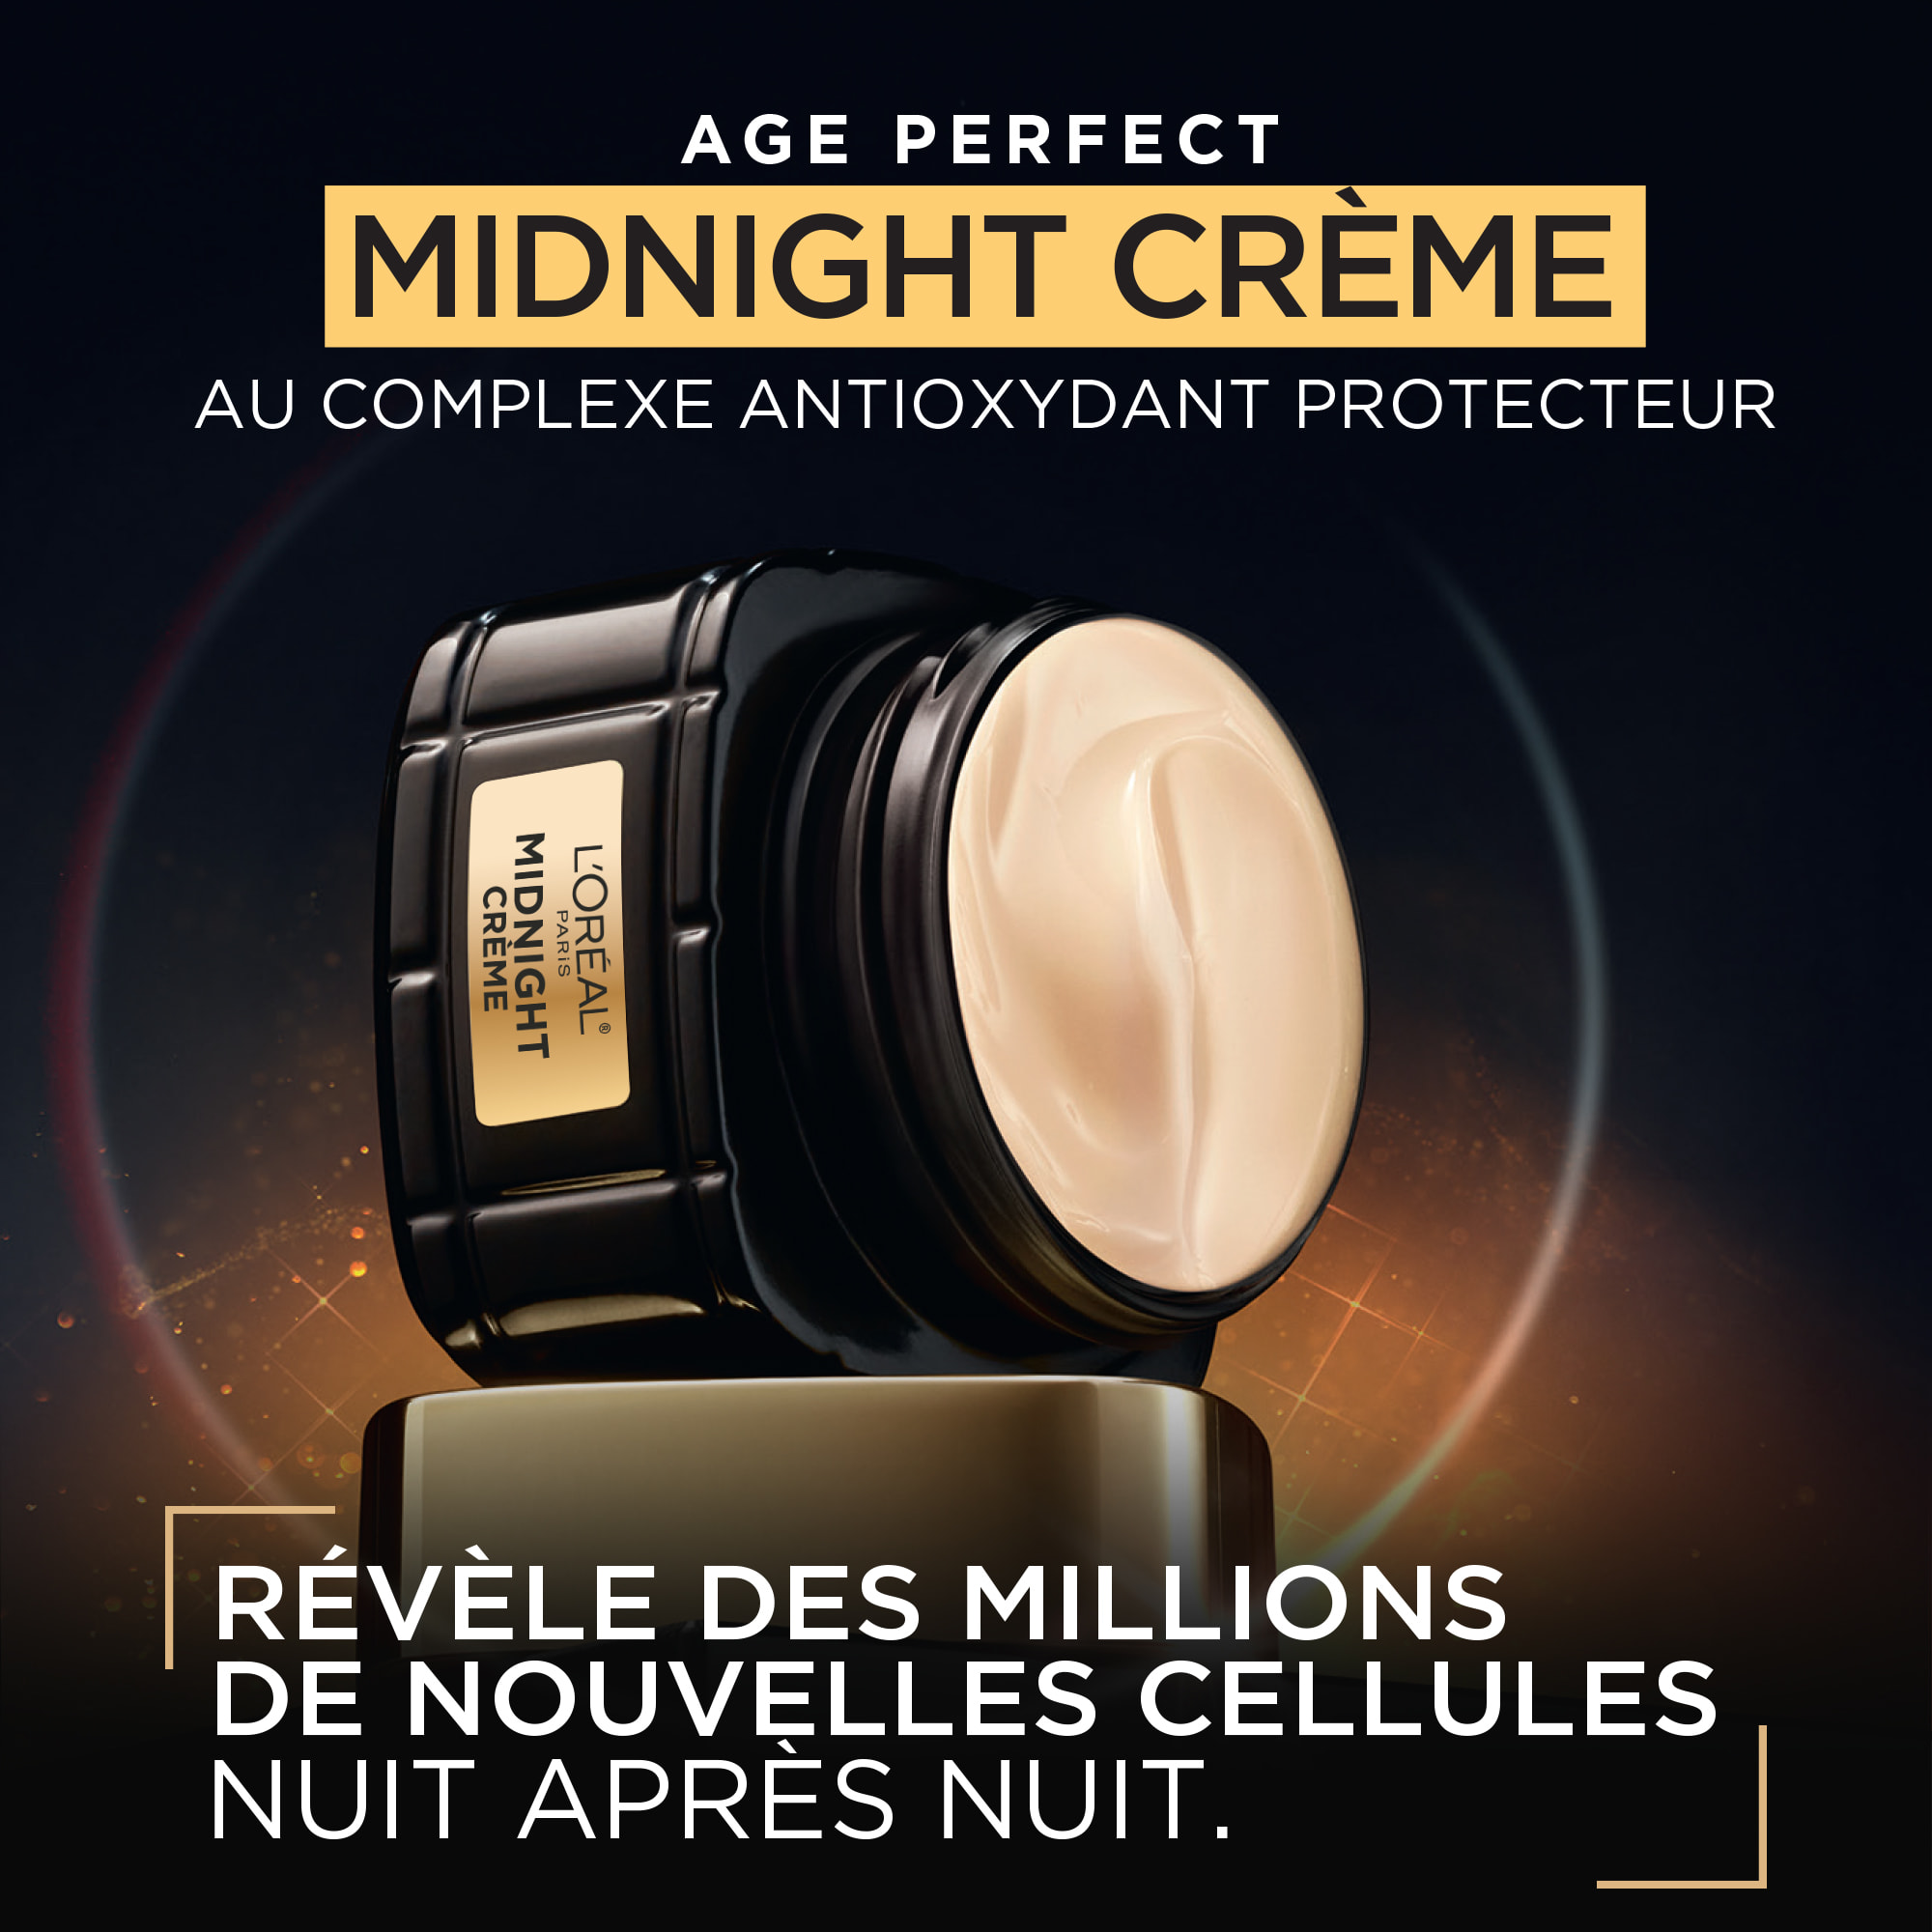 Age Perfect Renaissance Cellulaire Midnight Crème